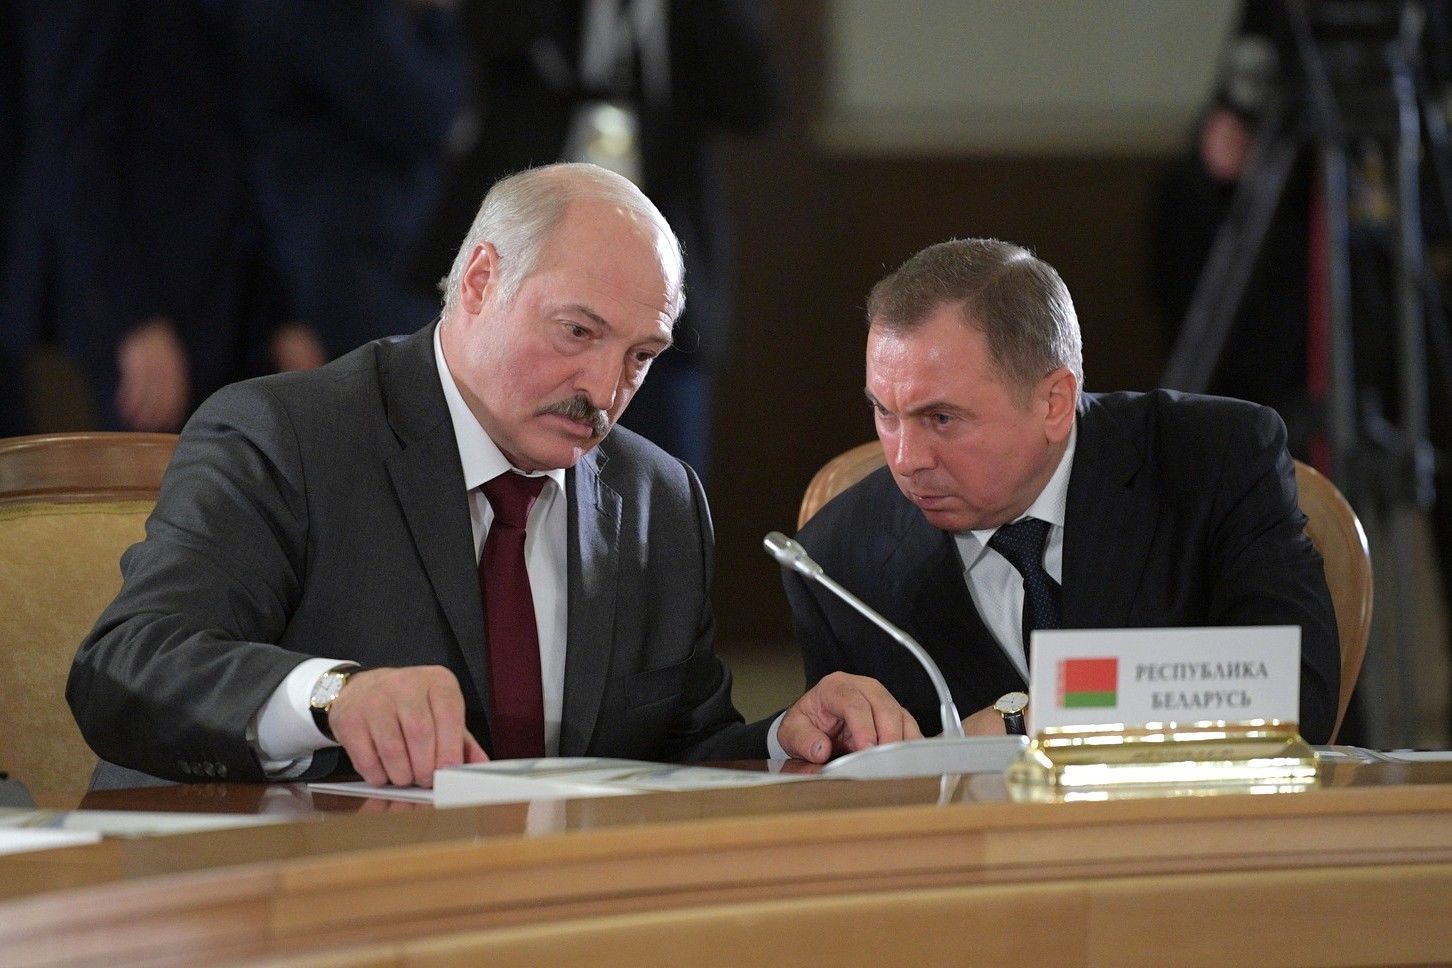 "Я почти уверен..." – Пионтковский высказался о ликвидации Макея и возможном устранении Лукашенко